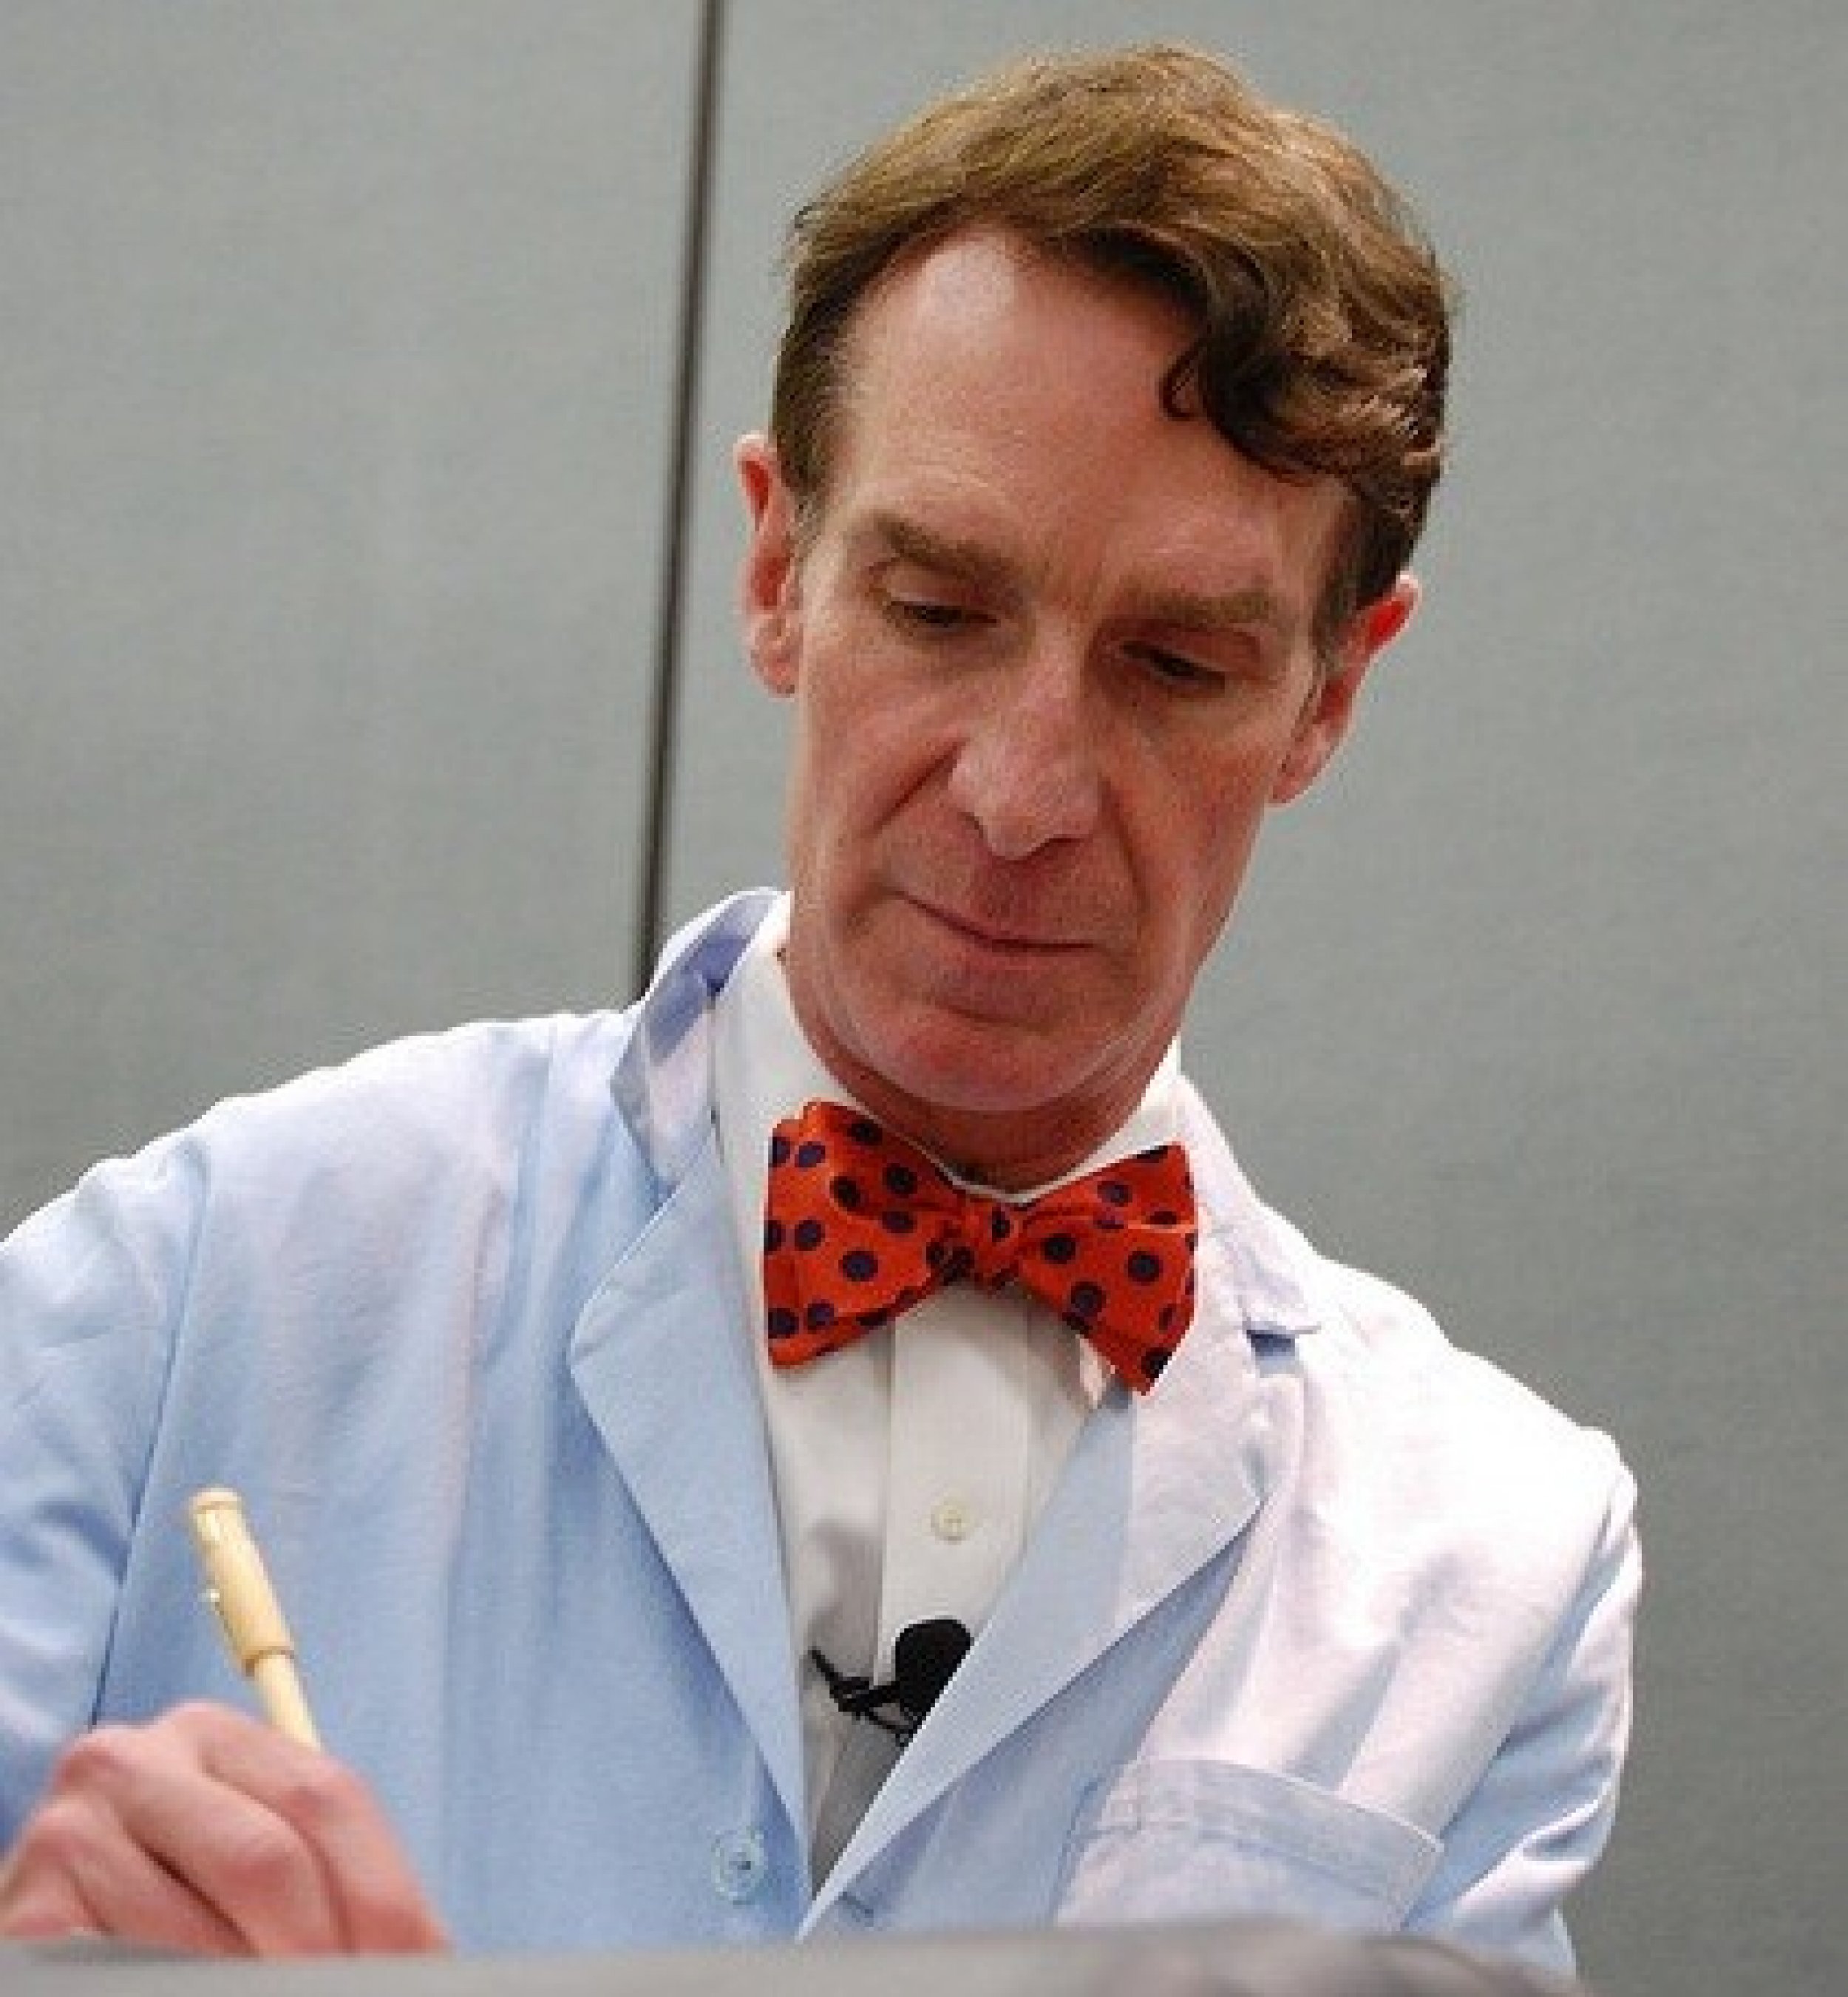 Bill Nye The Science Guy Not Dead, Despite Twitter Rumors VIDEO